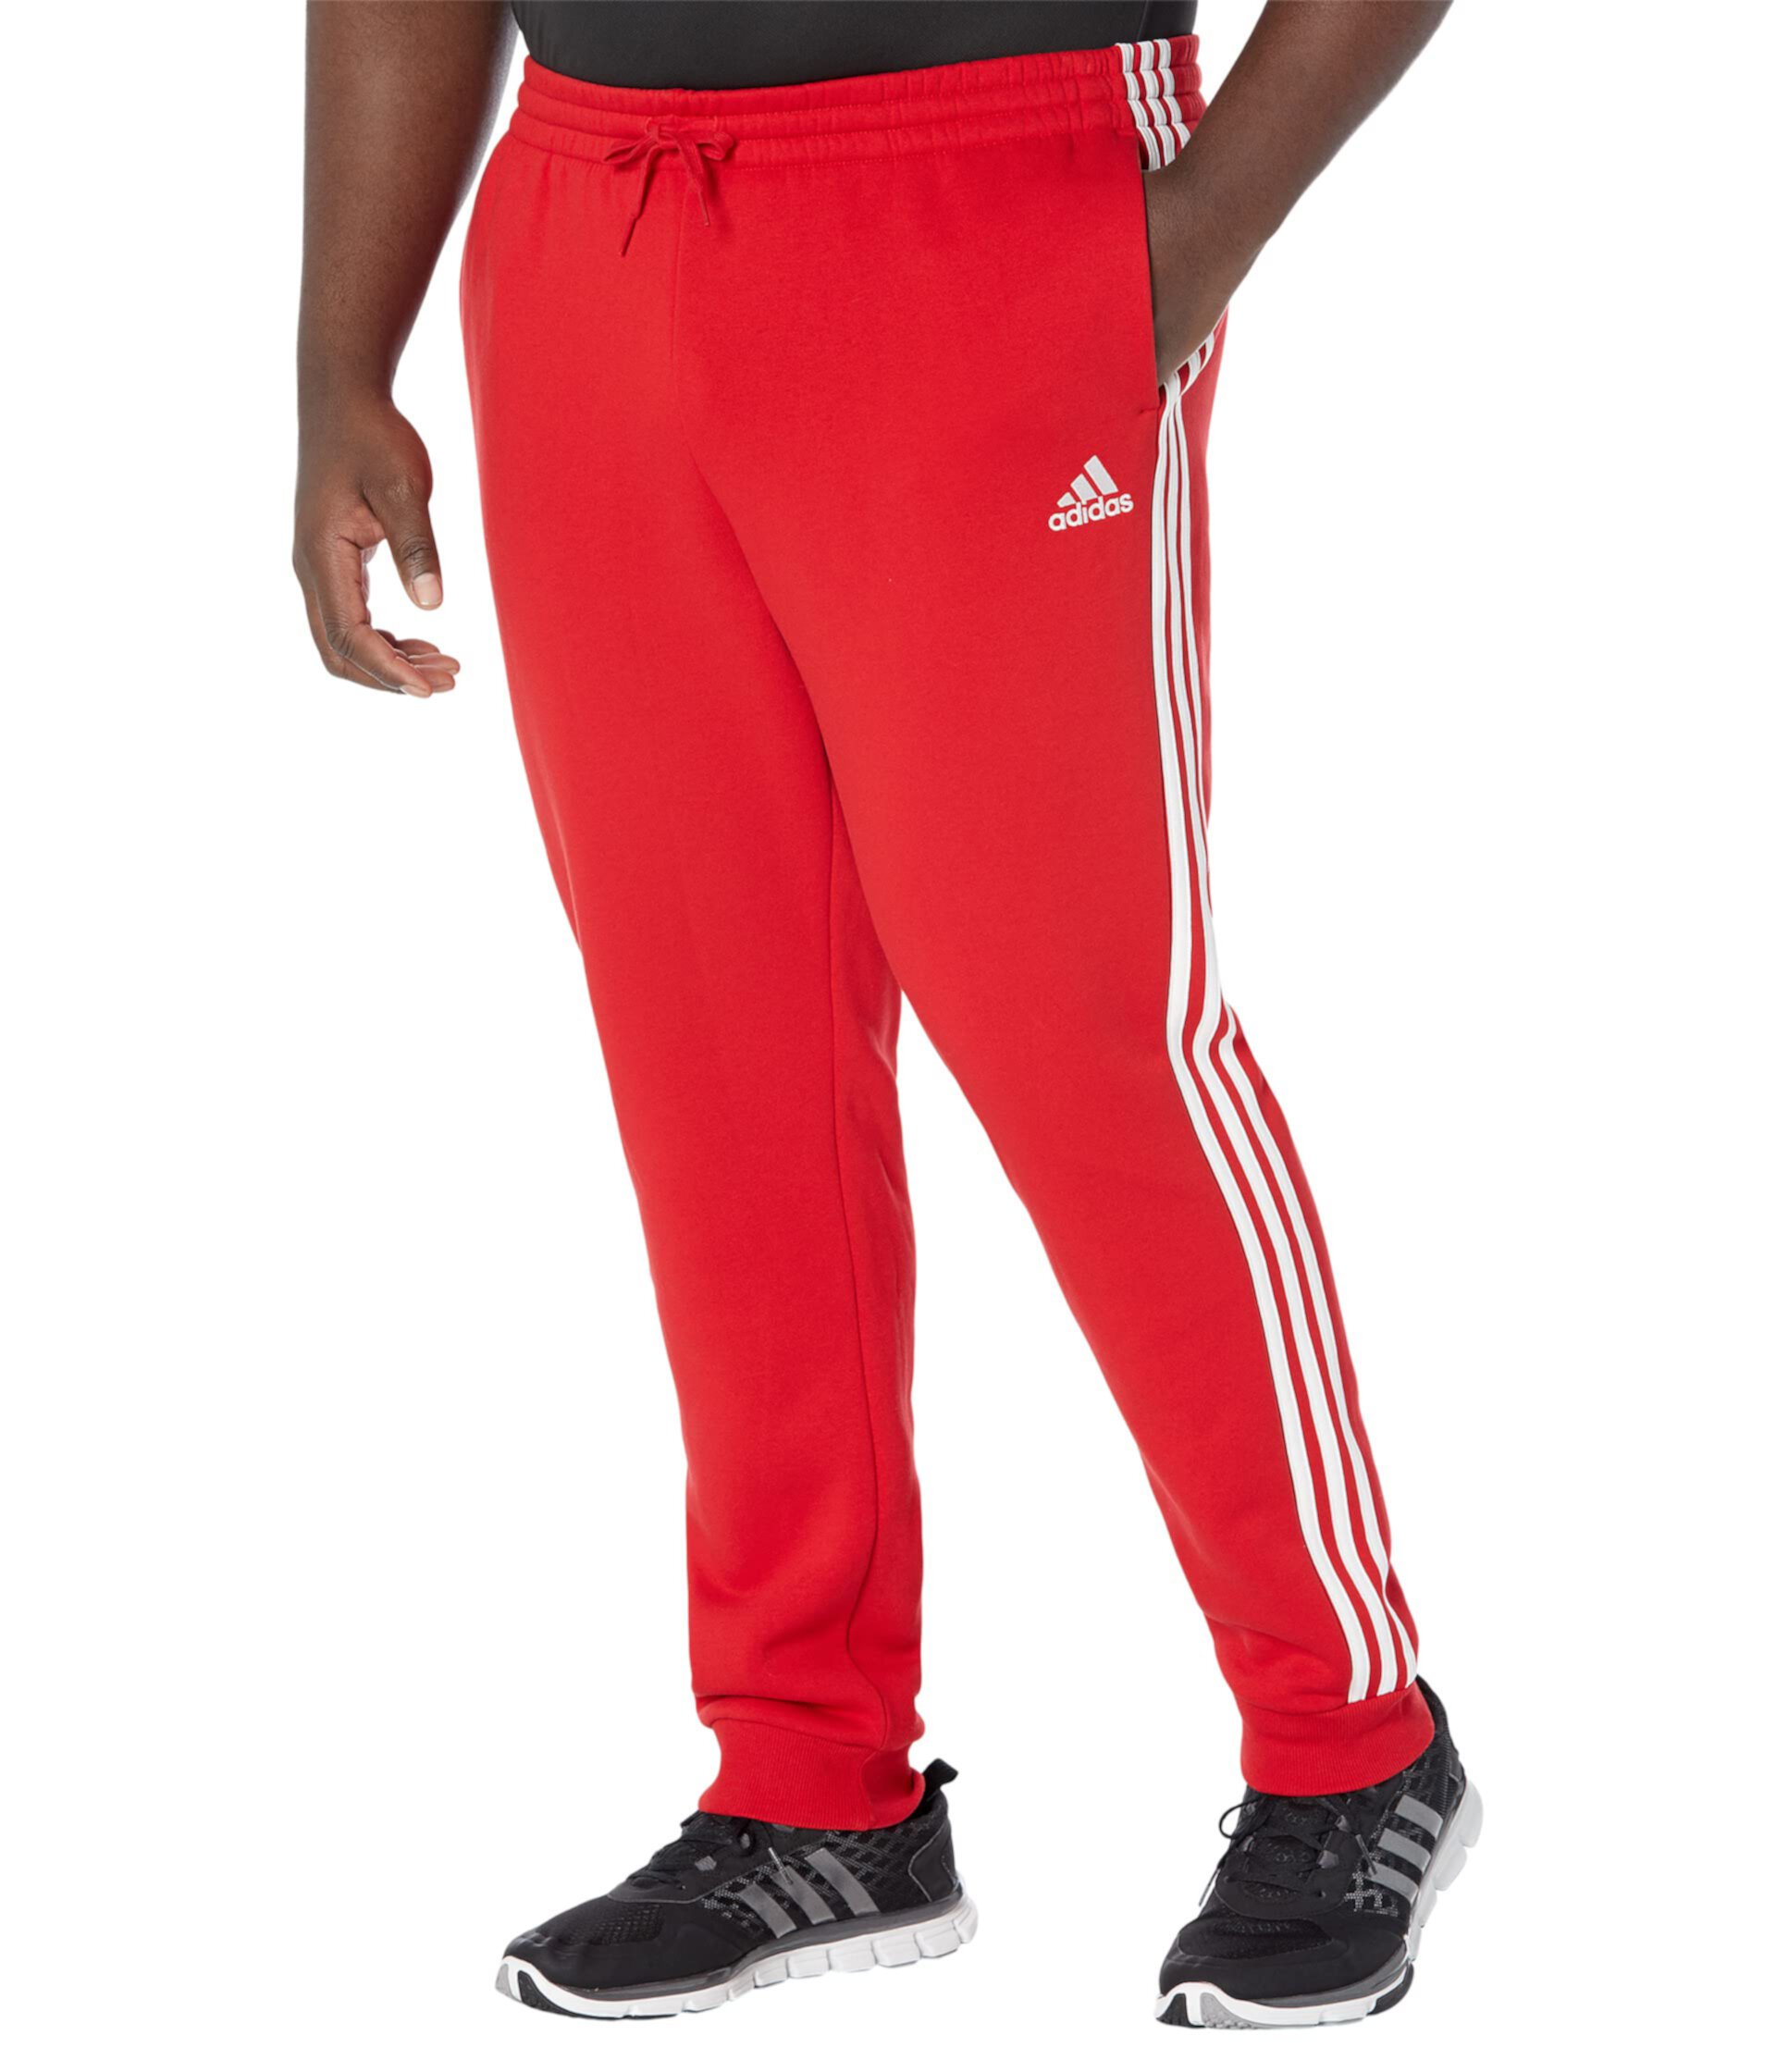 Зауженные флисовые брюки с 3 полосками и манжетами Big & Tall Essentials Adidas